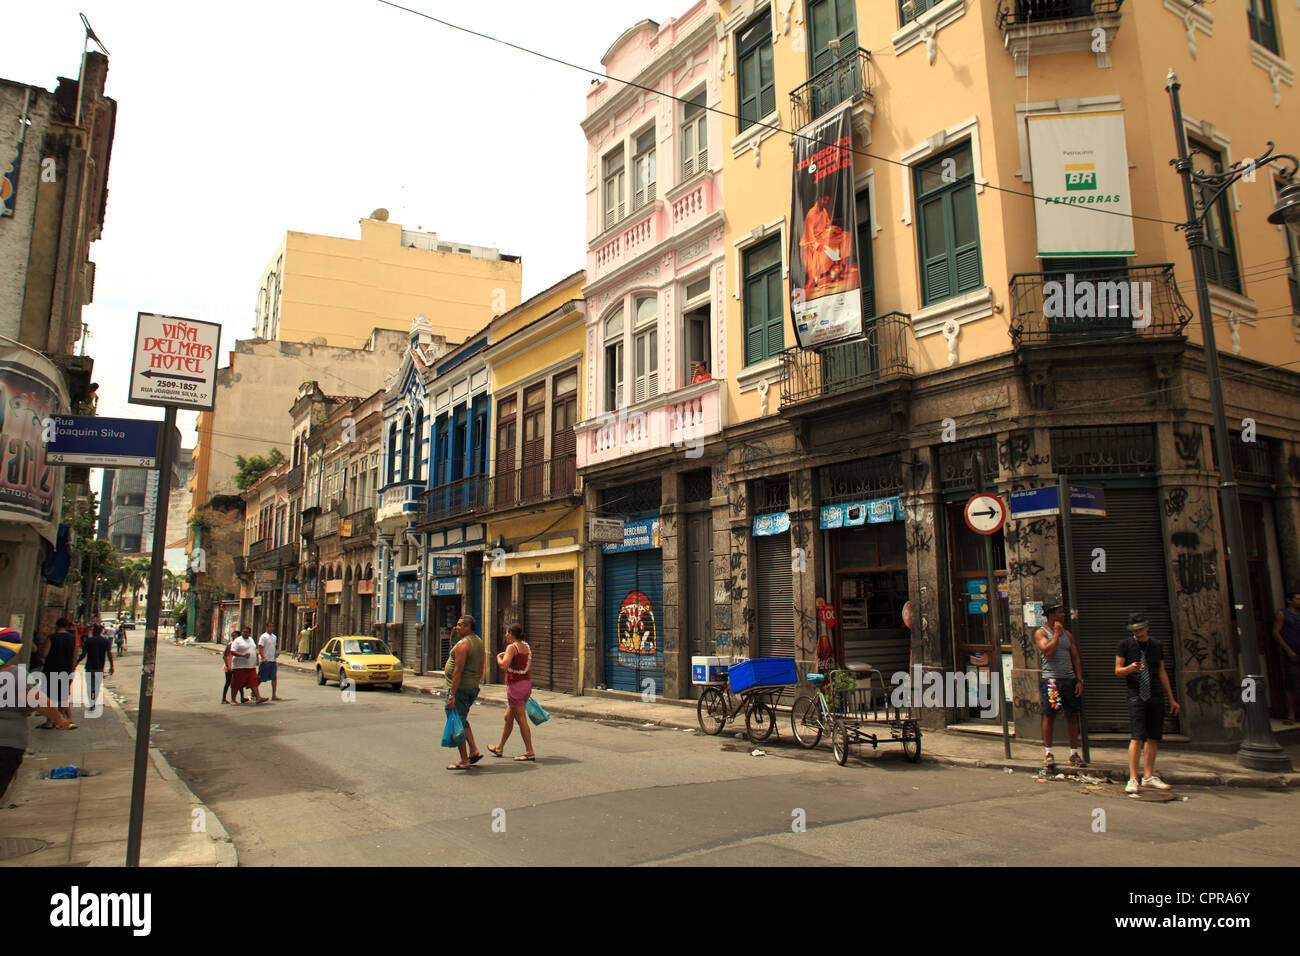 Portuguese colonial architecture facade and street scene in Rio de Janeiro, Brazil Stock Photo